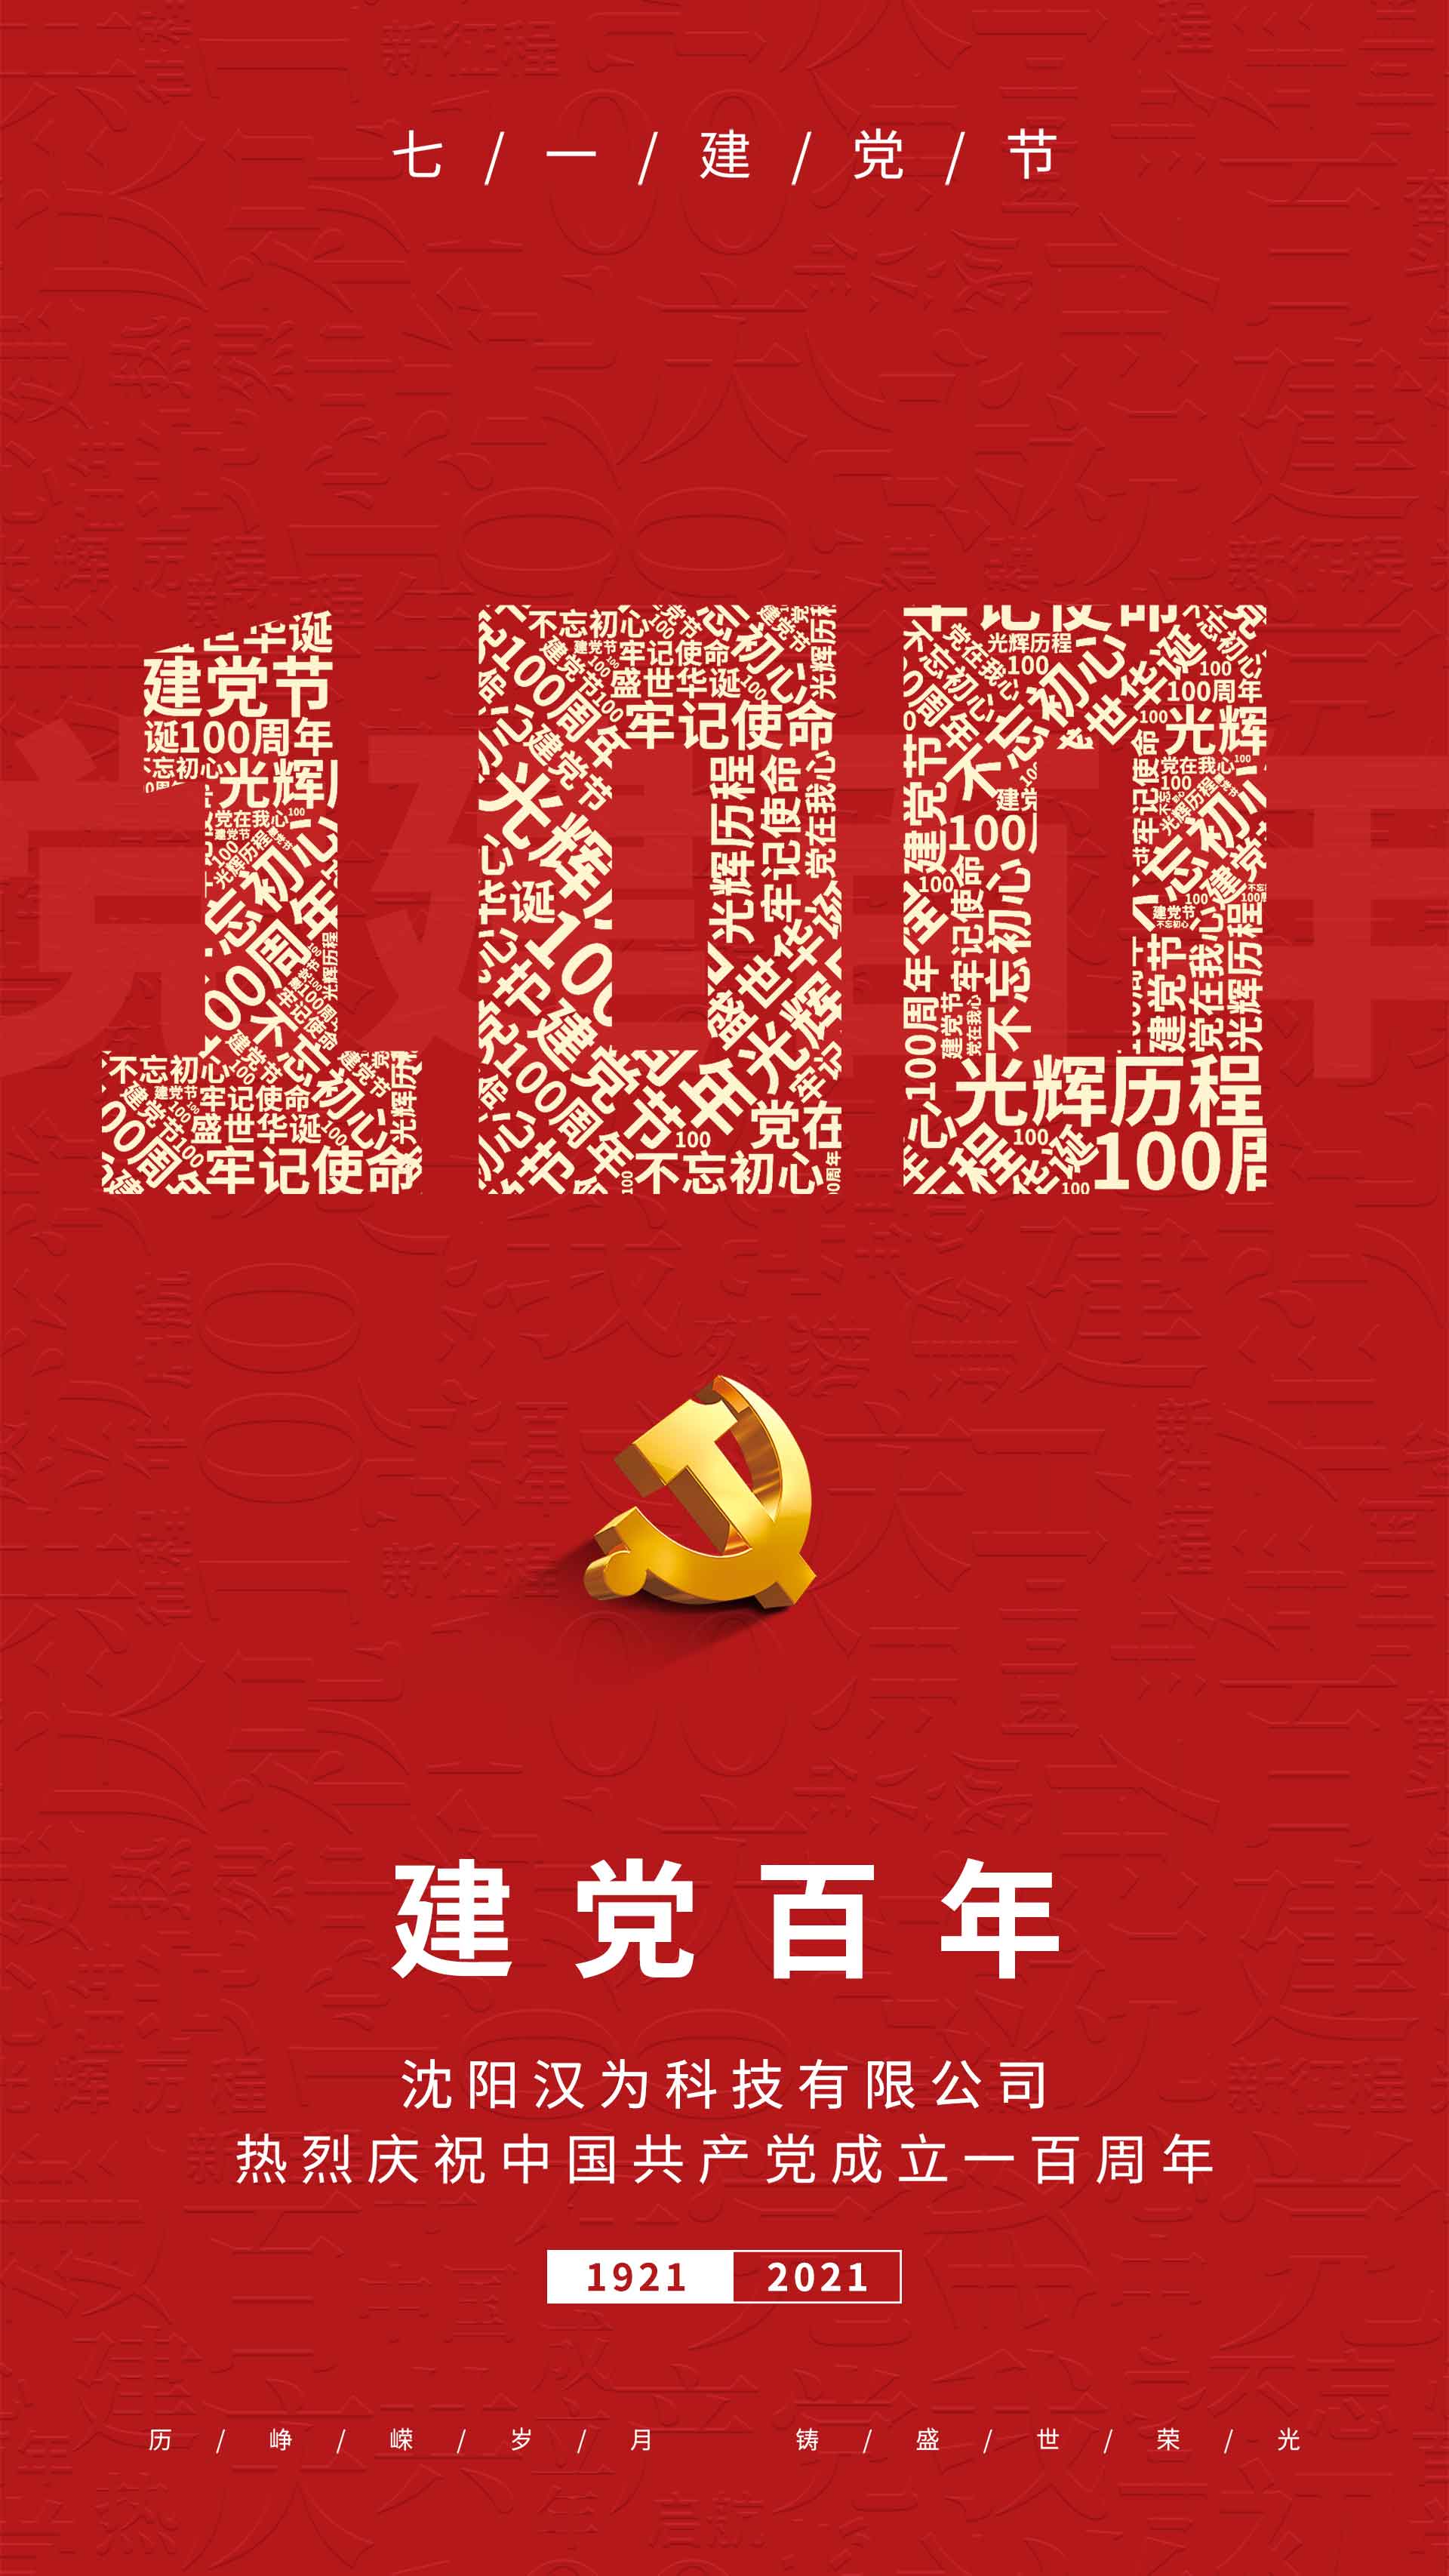 划片机、晶圆切割机的专业生产厂家热烈庆祝共产党建设一百周年！